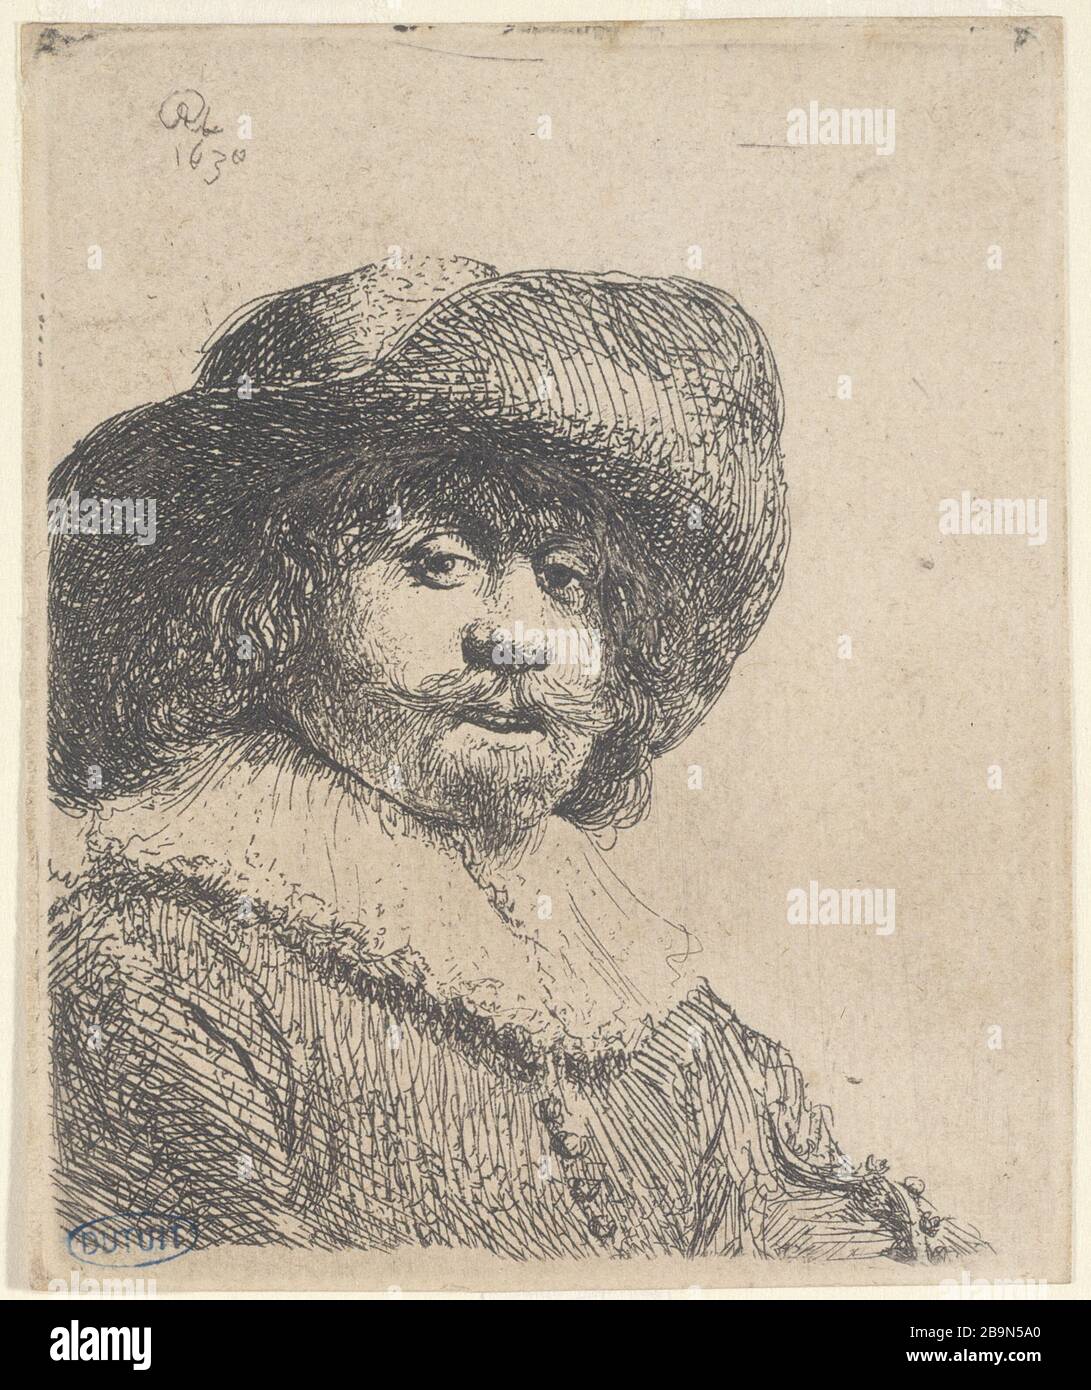 UOMO CON CAPPELLO IN GRAND BOARD Harmensz van Rijn Rembrandt (1606-1669). 'Homme avec un chapeau à Grand bord' (B 311, état unique), 1638. Musée des Beaux-Arts de la Ville de Paris, Petit Palais. Foto Stock